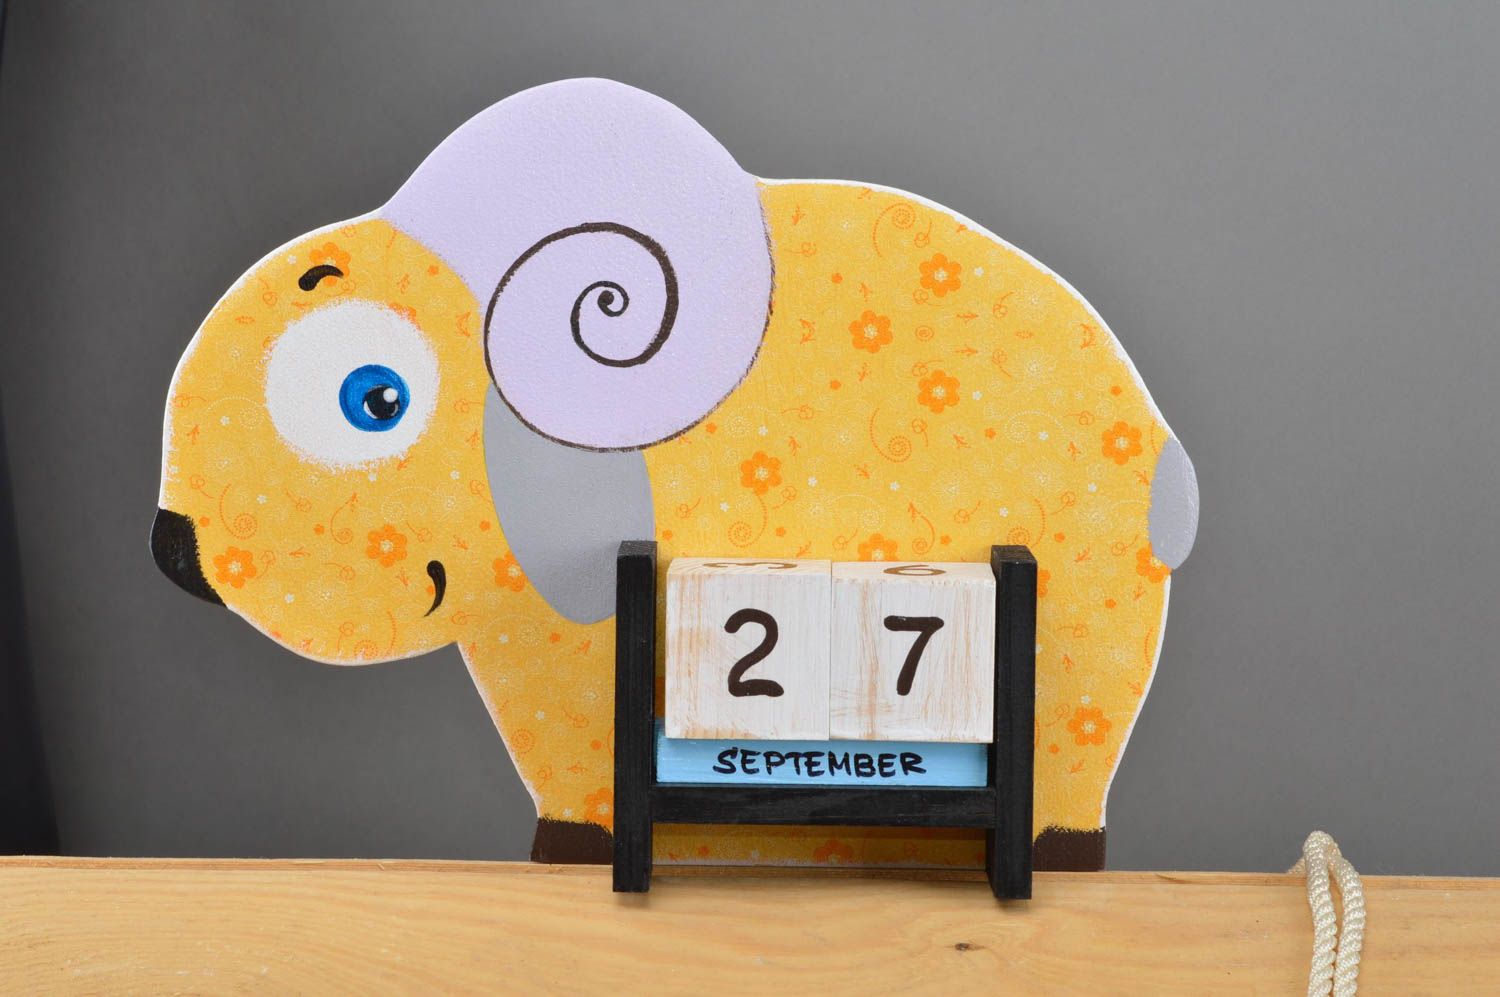 Календарь в виде овечки небольшой желтый небольшого размера для детей хэнд мейд фото 2